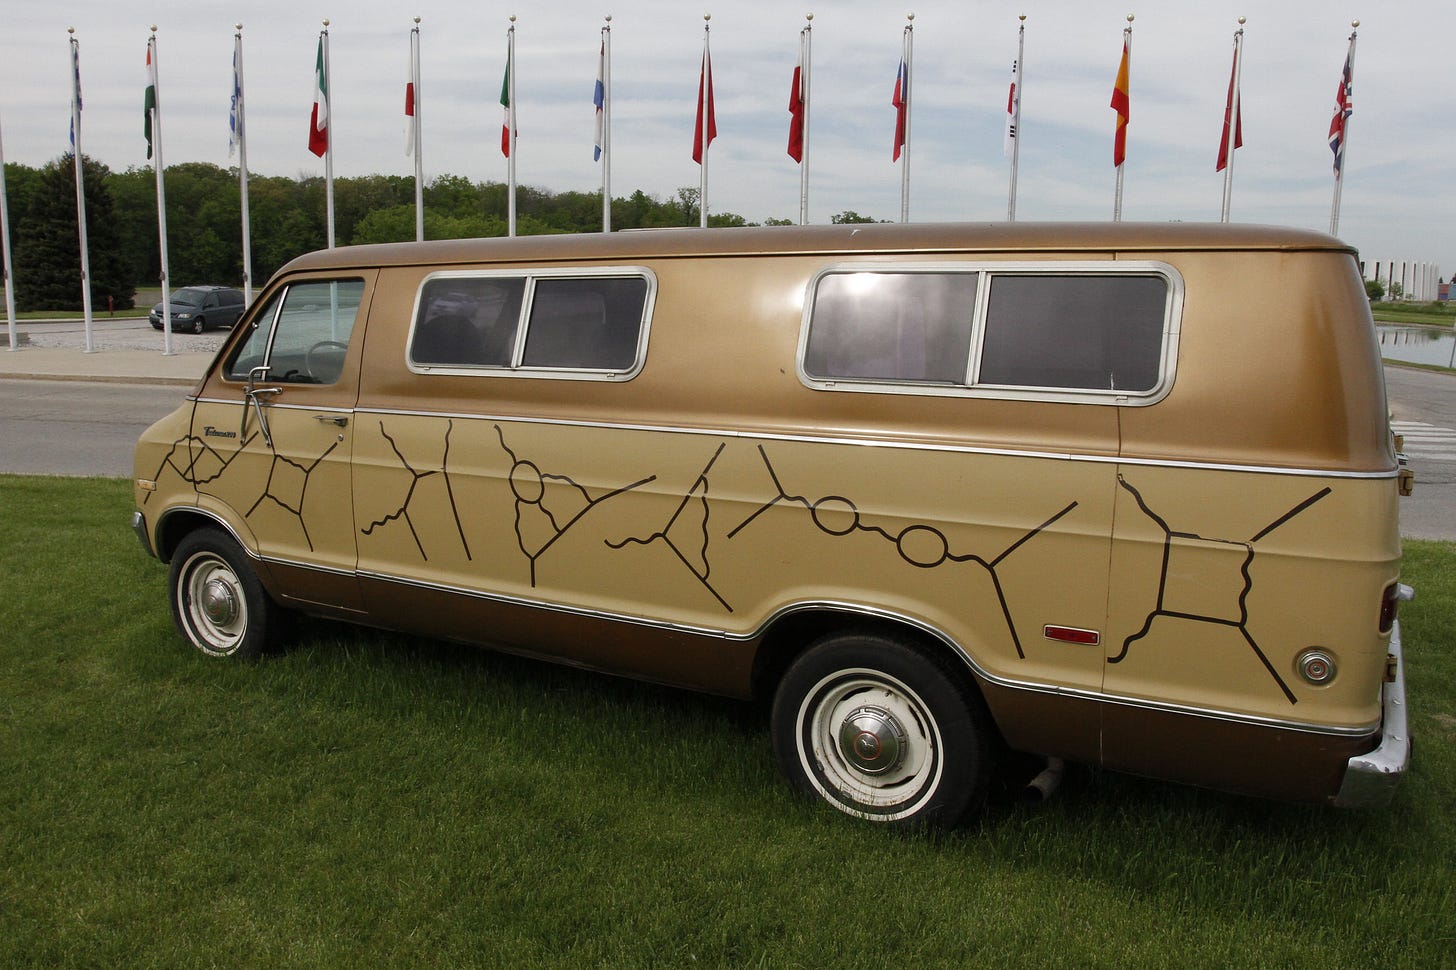 Richard Feynman's mustard-coloured van.